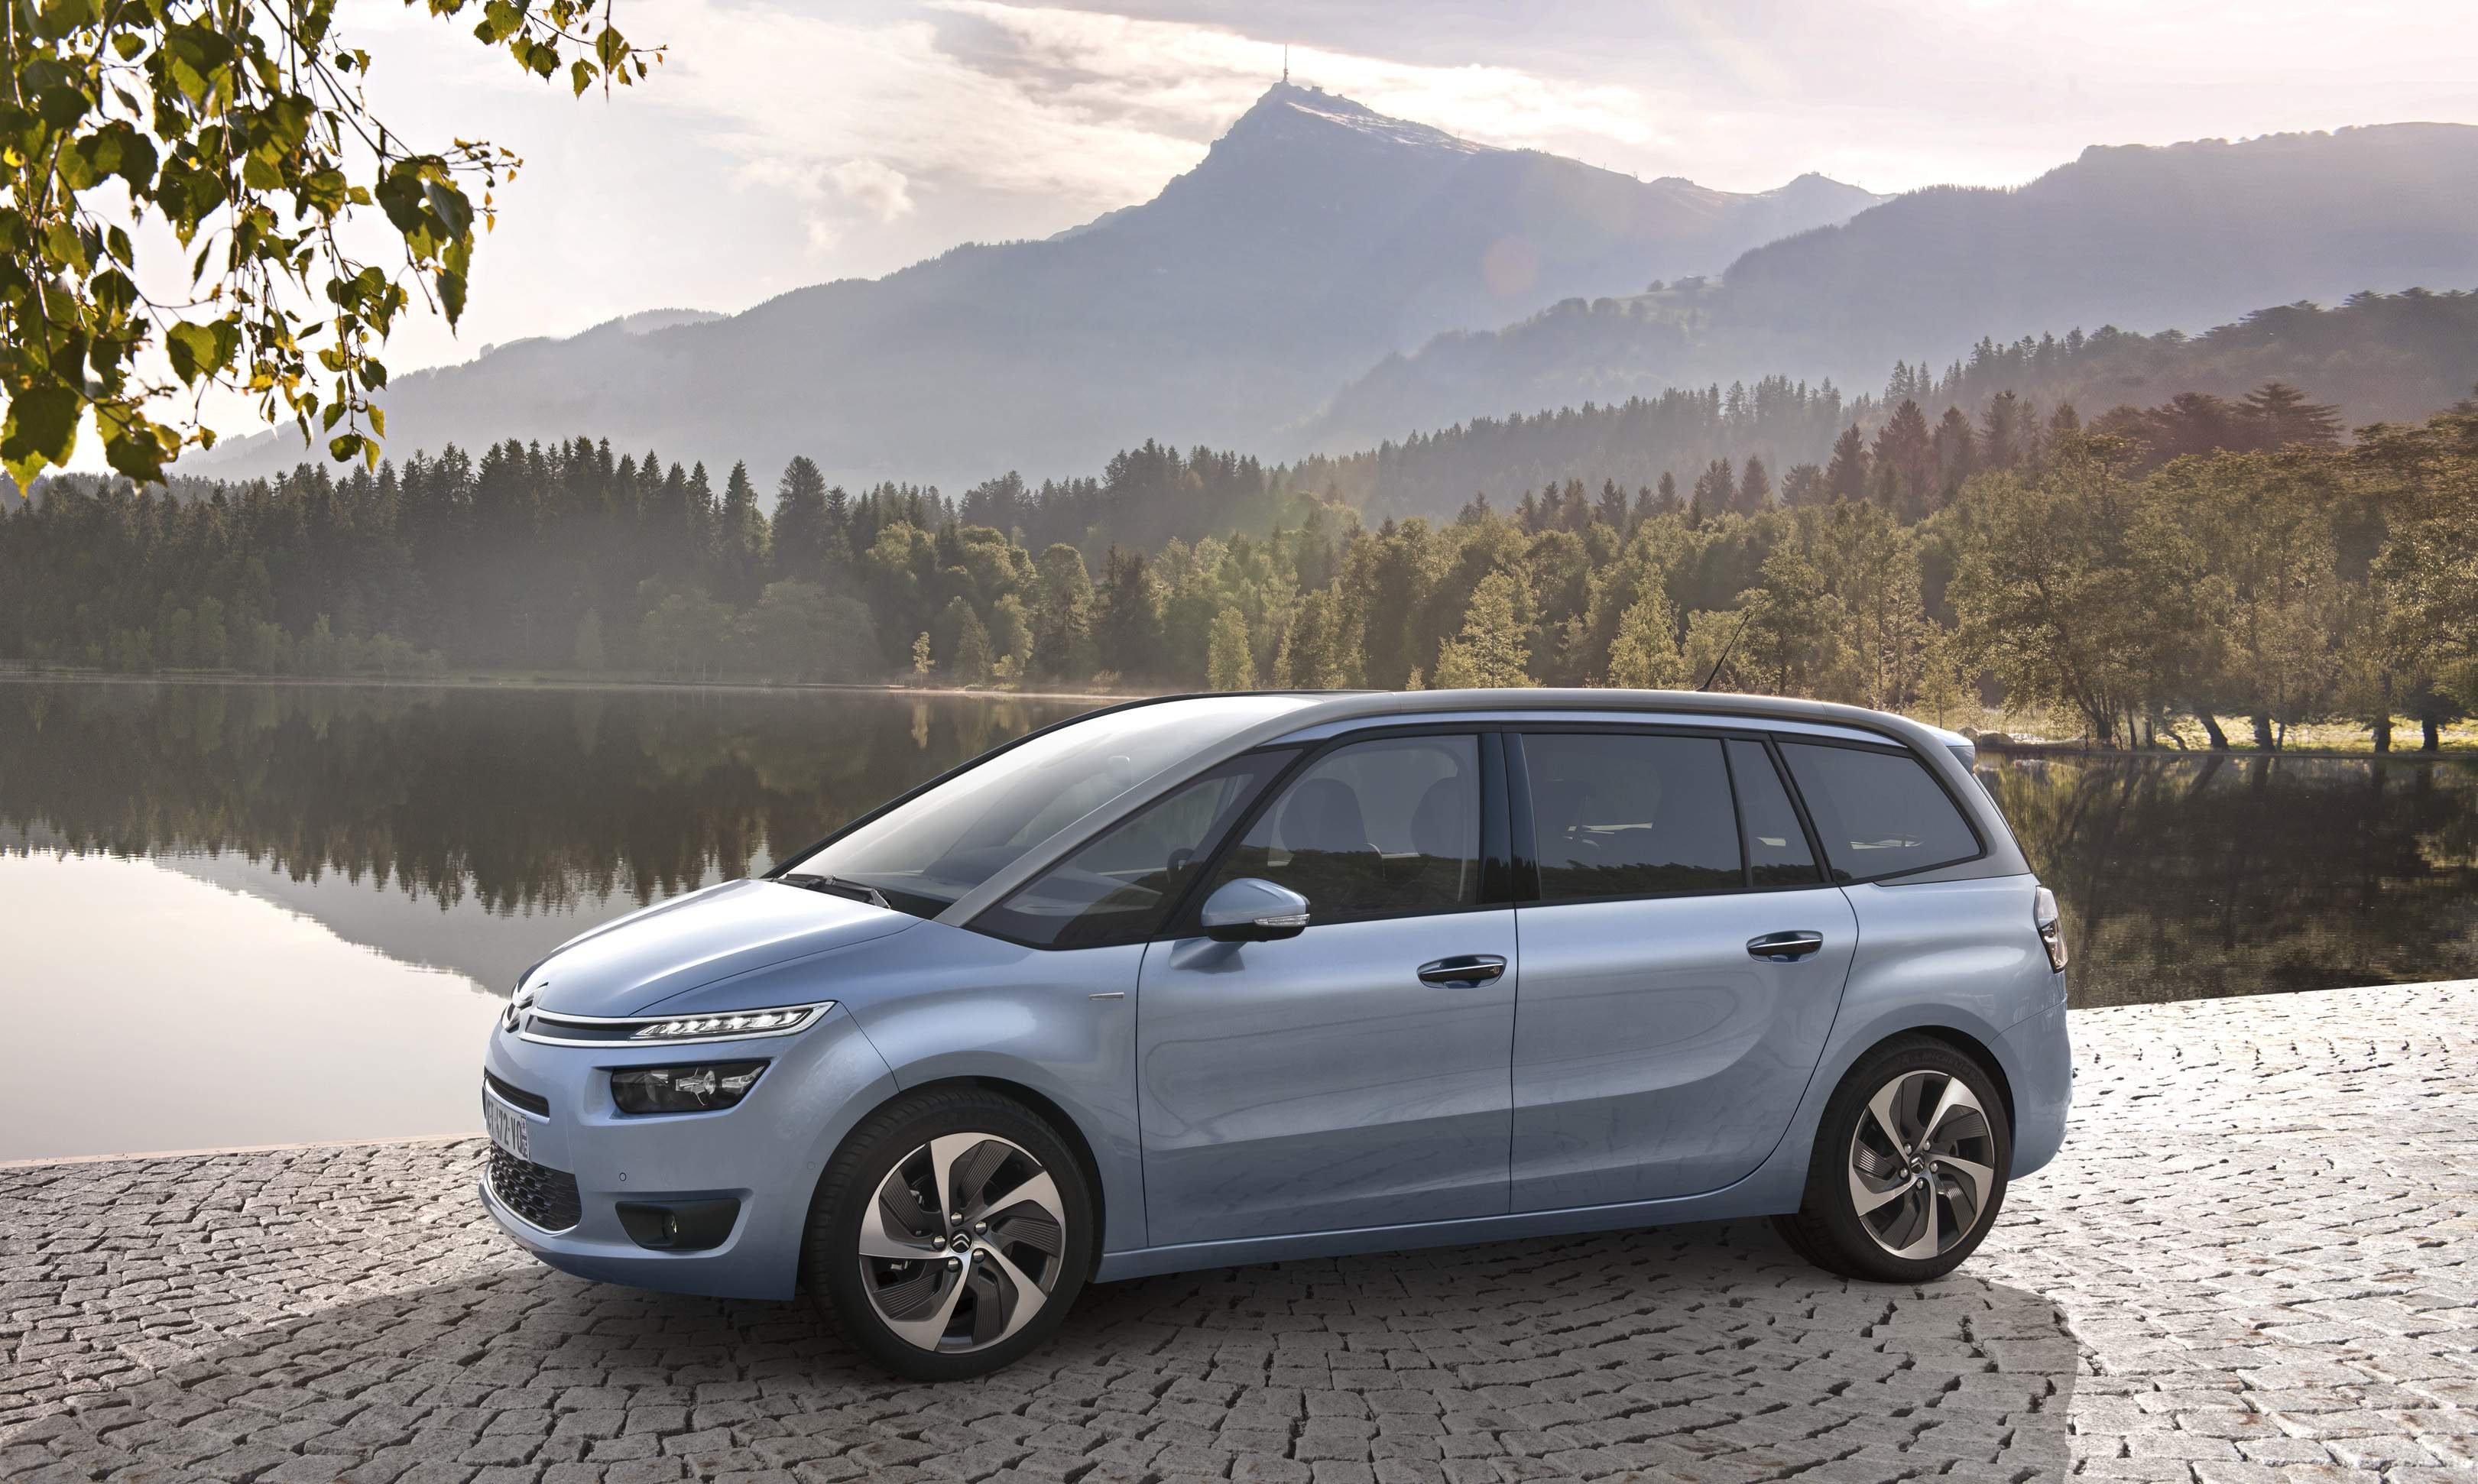 Vend tilbage hydrogen Perfekt Citroën C4 Picasso nu med 7 sæder | Bilmagasinet.dk